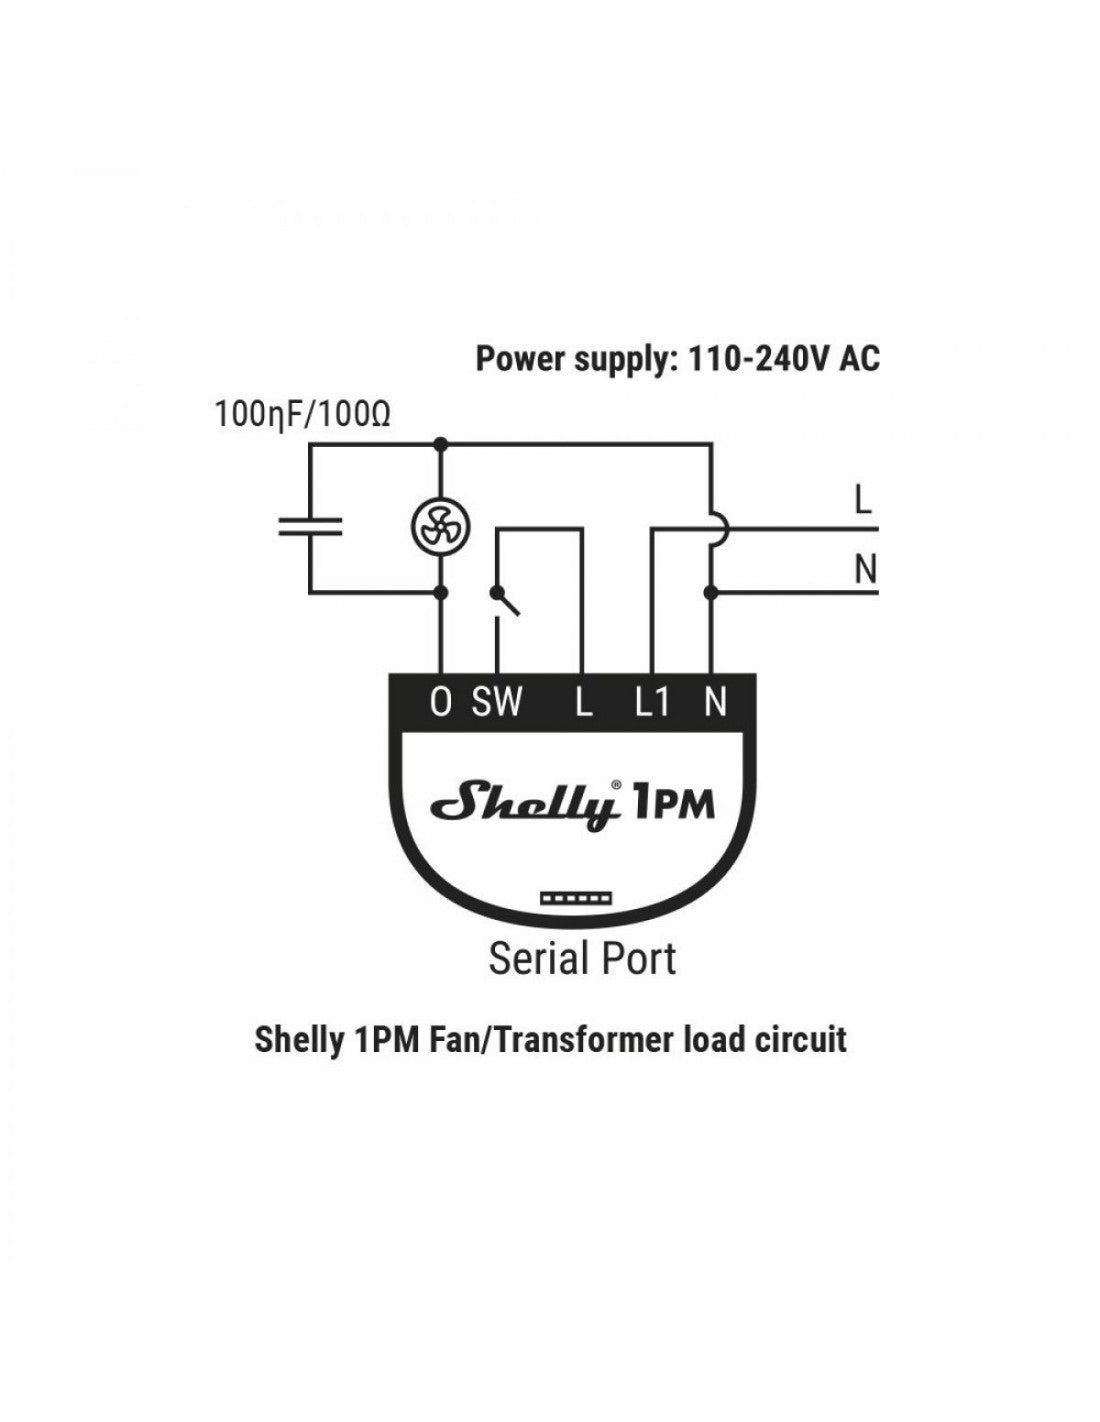 Shelly RC Snubber Eliminação de interferências eléctricas para um funcionamento suave e seguro esquema com shelly 1pm